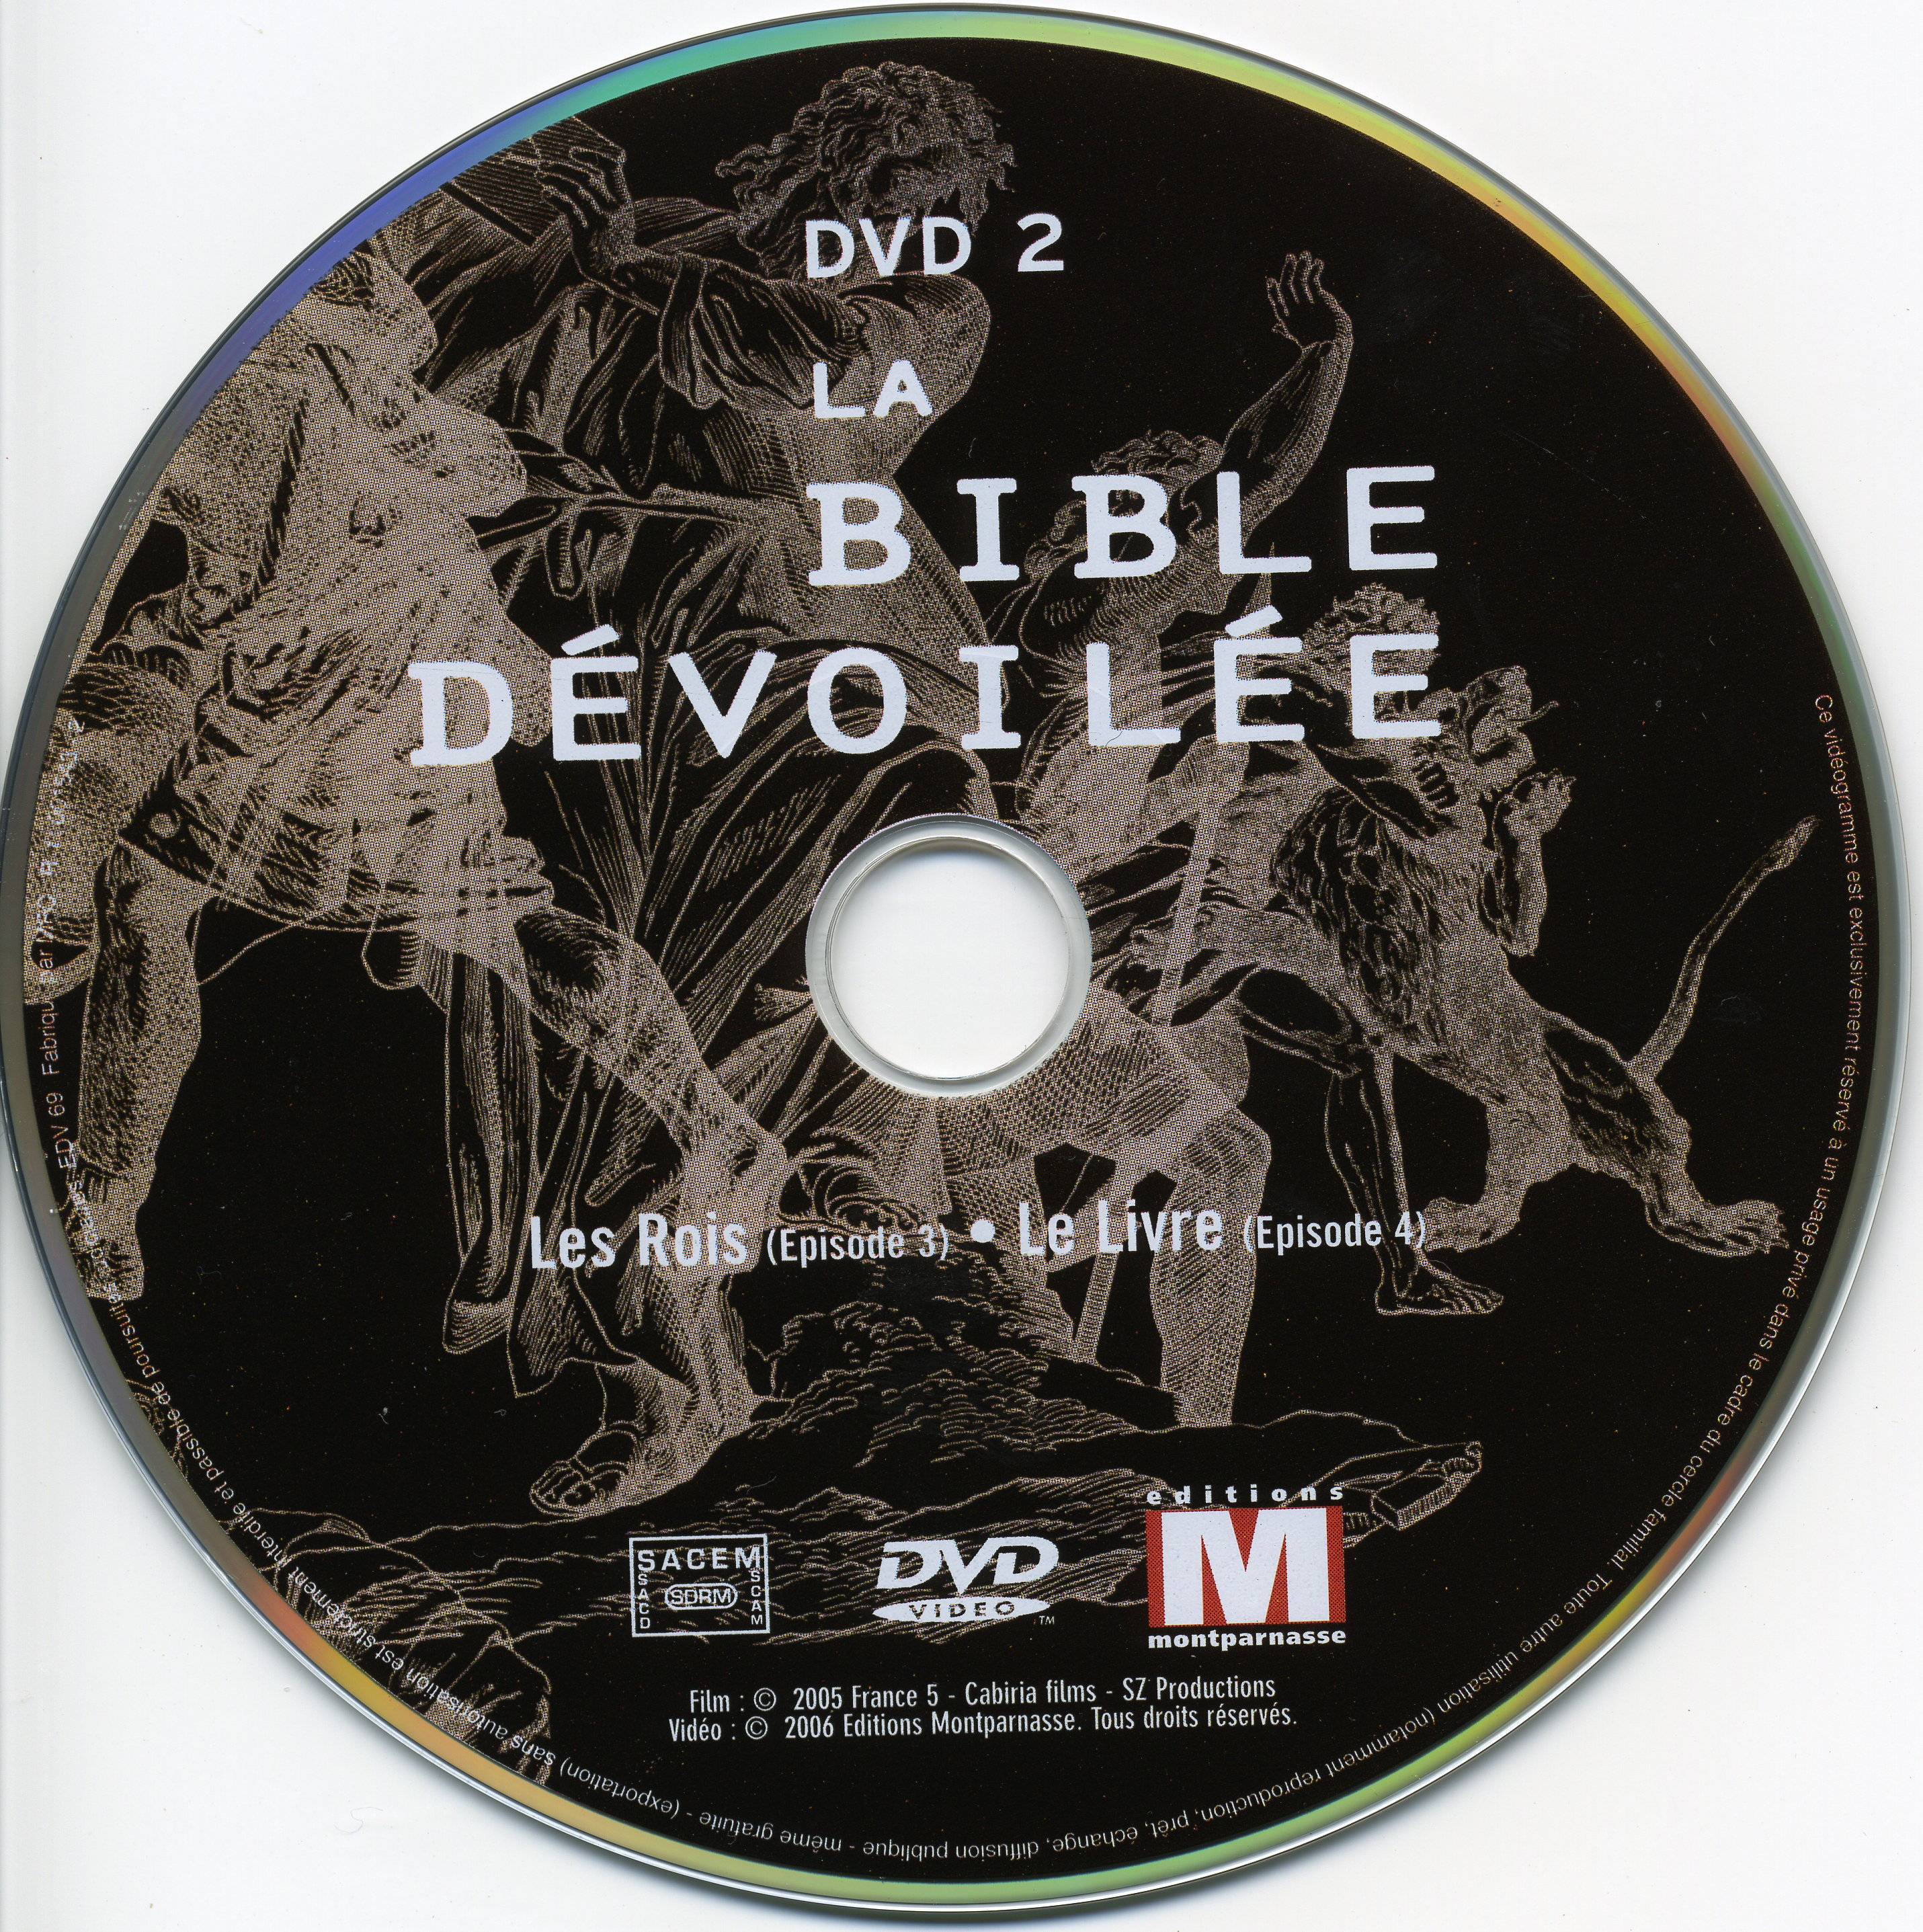 La bible devoile DISC 2